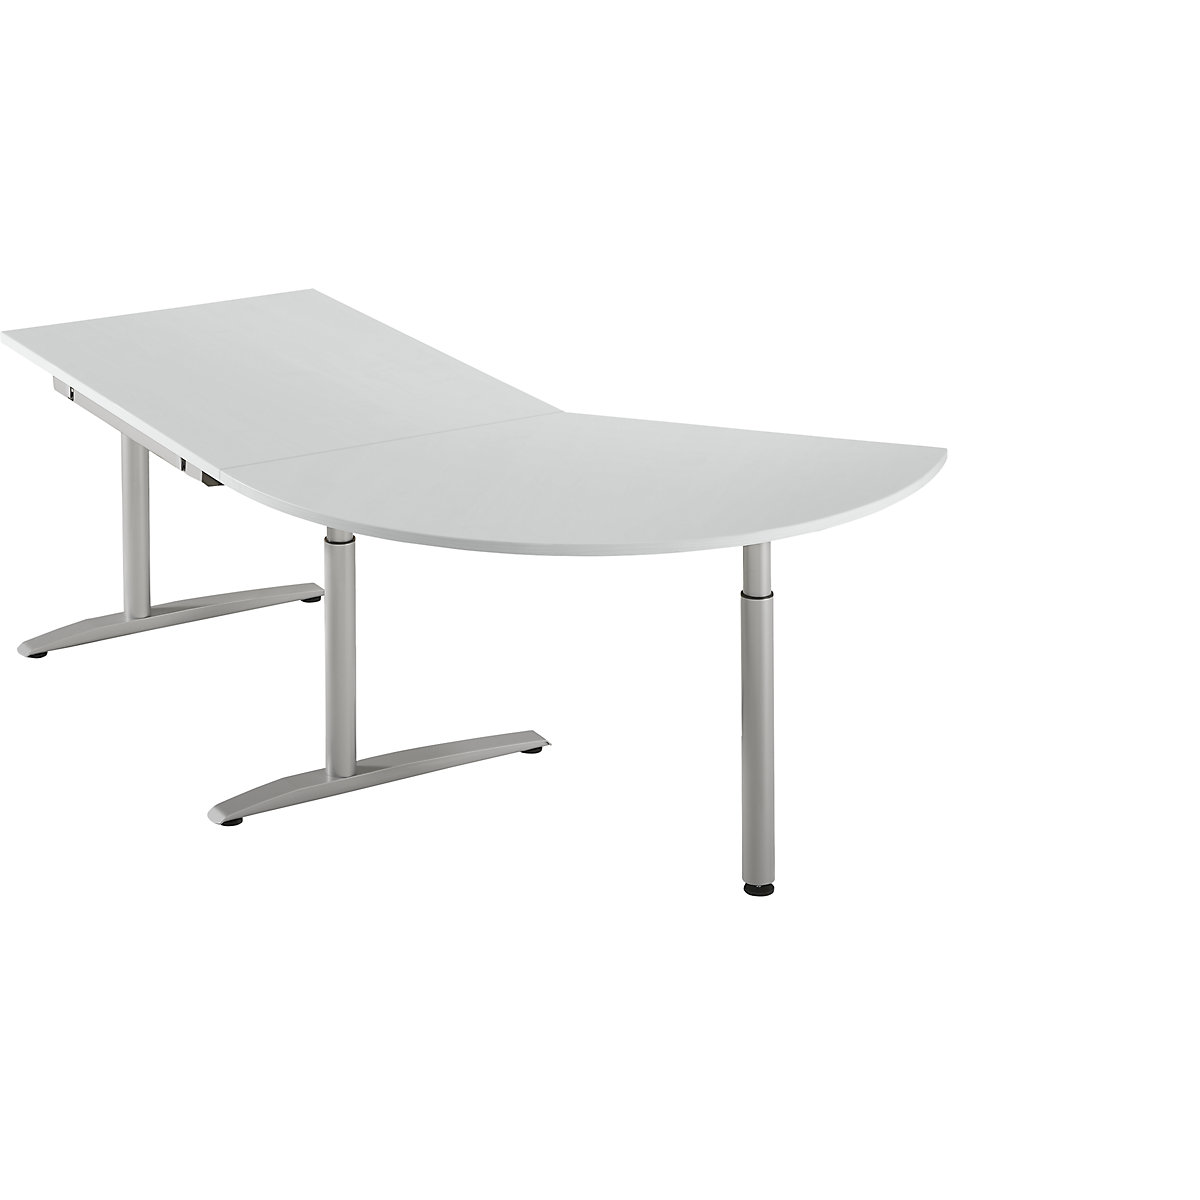 Table d'extension réglable en hauteur de 650 à 850 mm HANNA, 3/8 de cercle, avec pied stabilisateur, gris clair